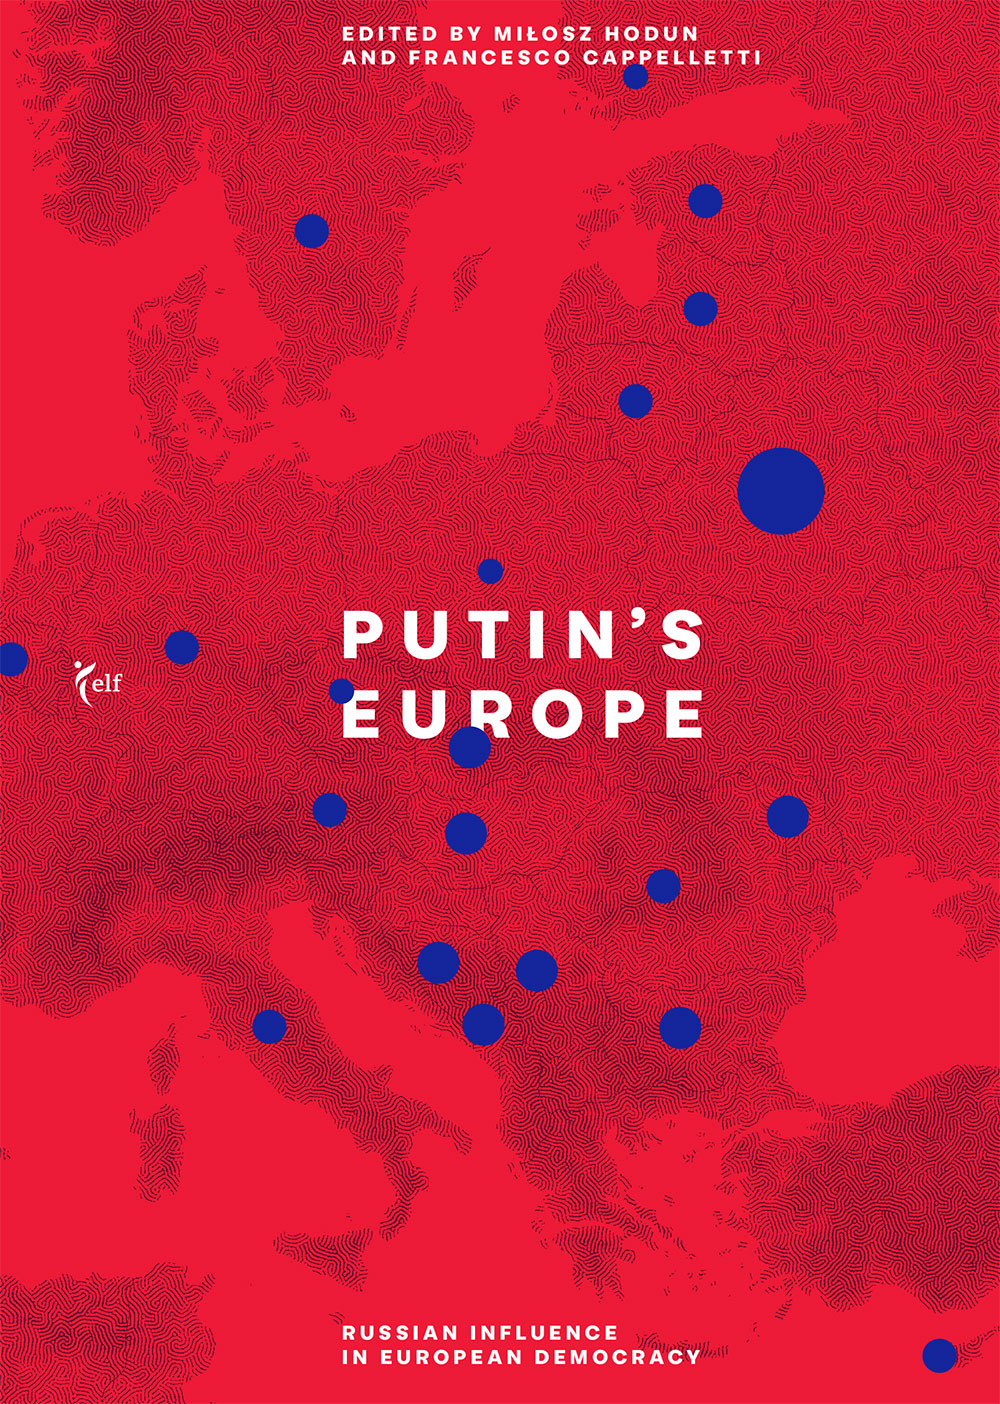 Putin’s Europe